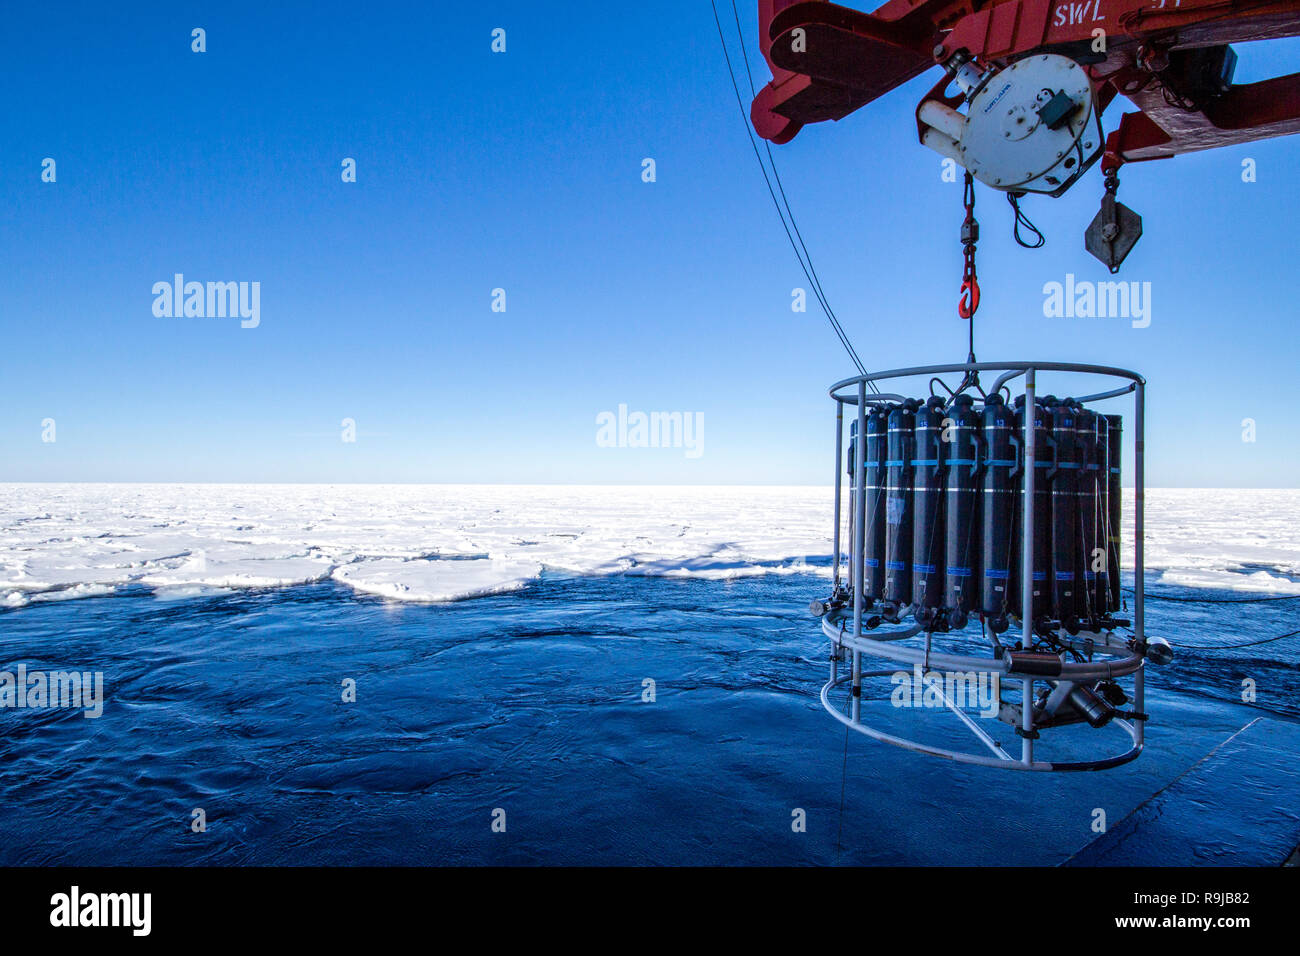 Weddell Meer, Antarktis - September 10, 2013: Wissenschaftler an Bord der Forschungseisbrecher Polarstern Bereitstellen einer CTD-Rosette system Ozeanographische zu messen Stockfoto